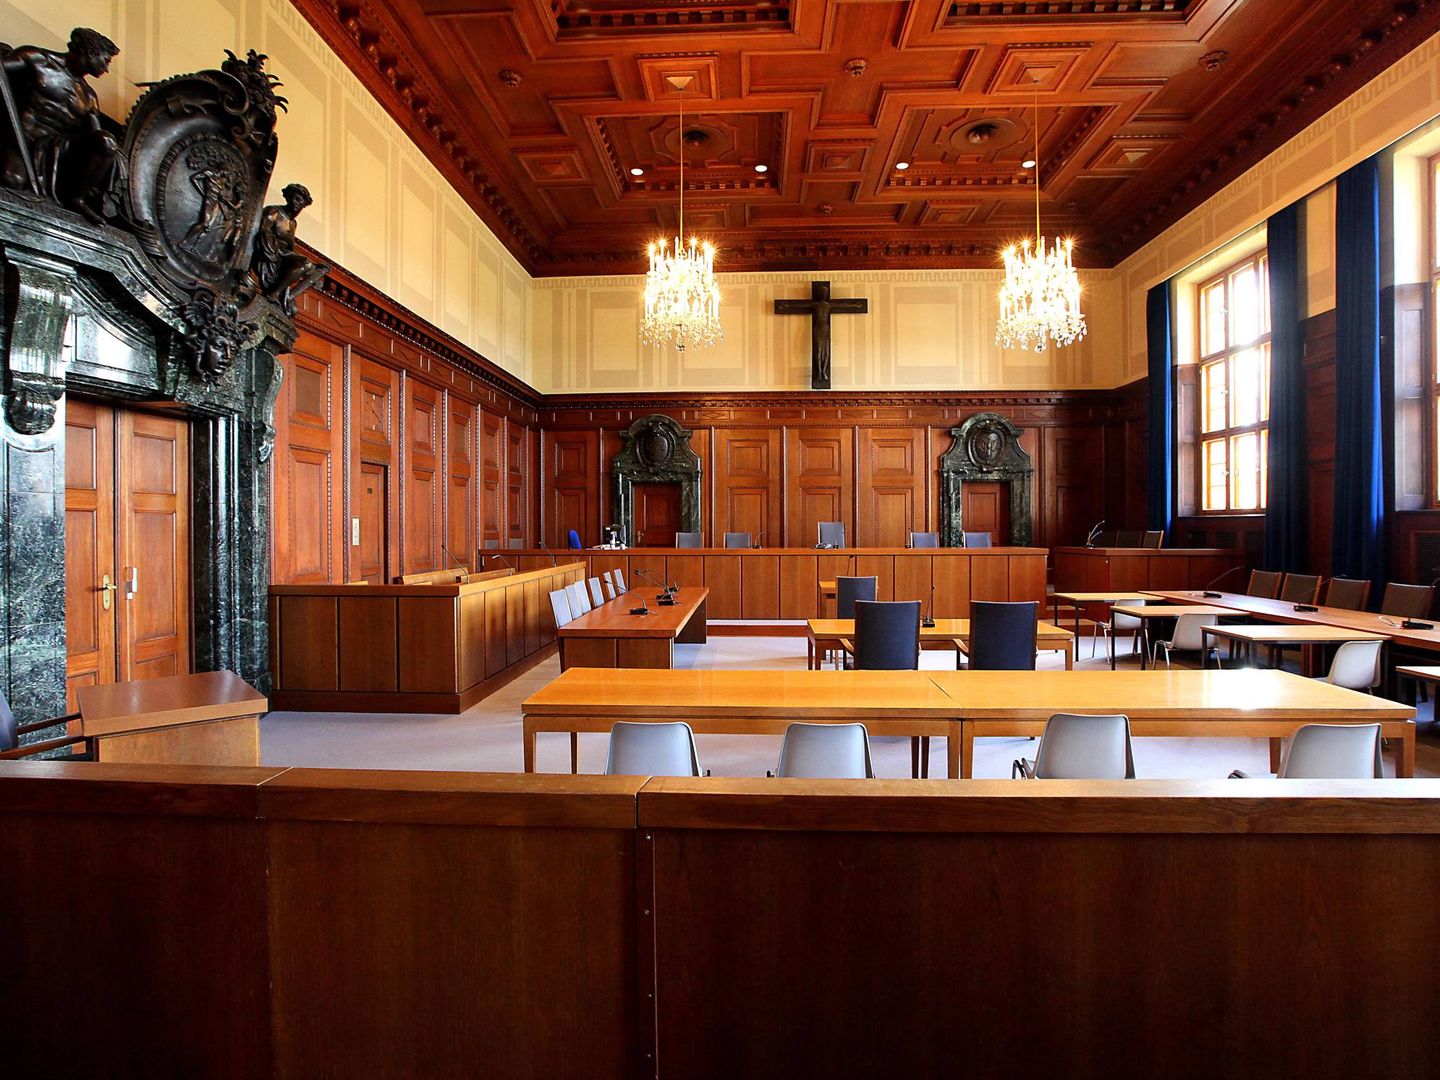 La sala 600 del Palacio de Justicia donde fueron juzgados los nazis. (Foto: Steffen Oliver Riese)